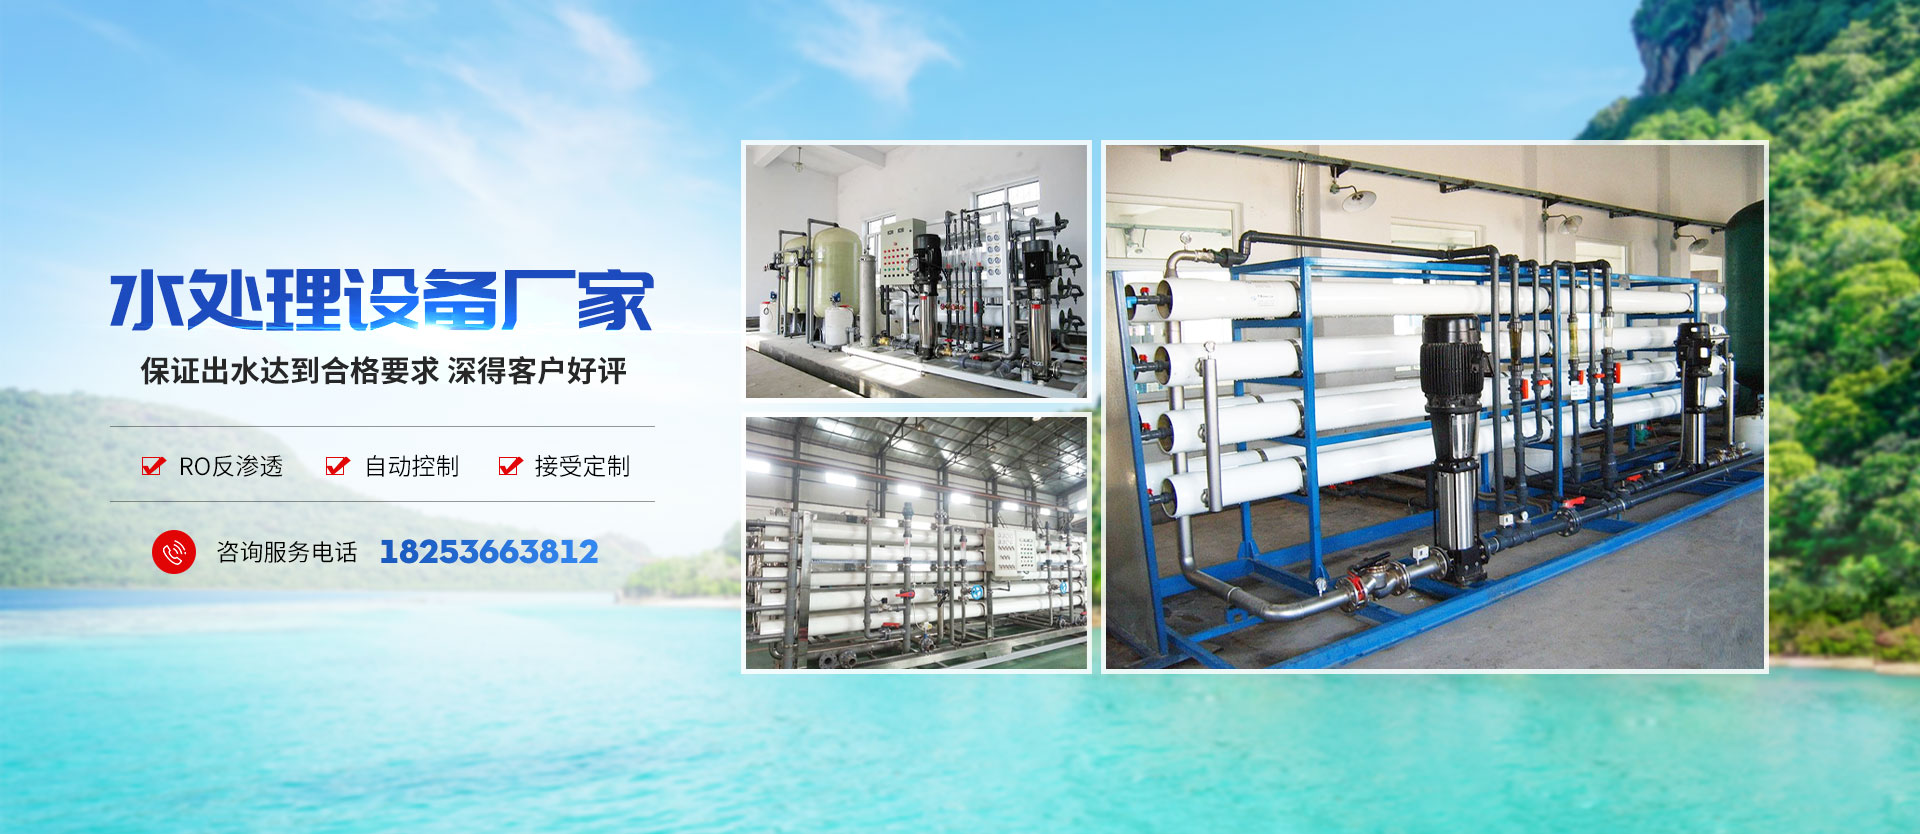 青州市同泰水處理設備有限公司